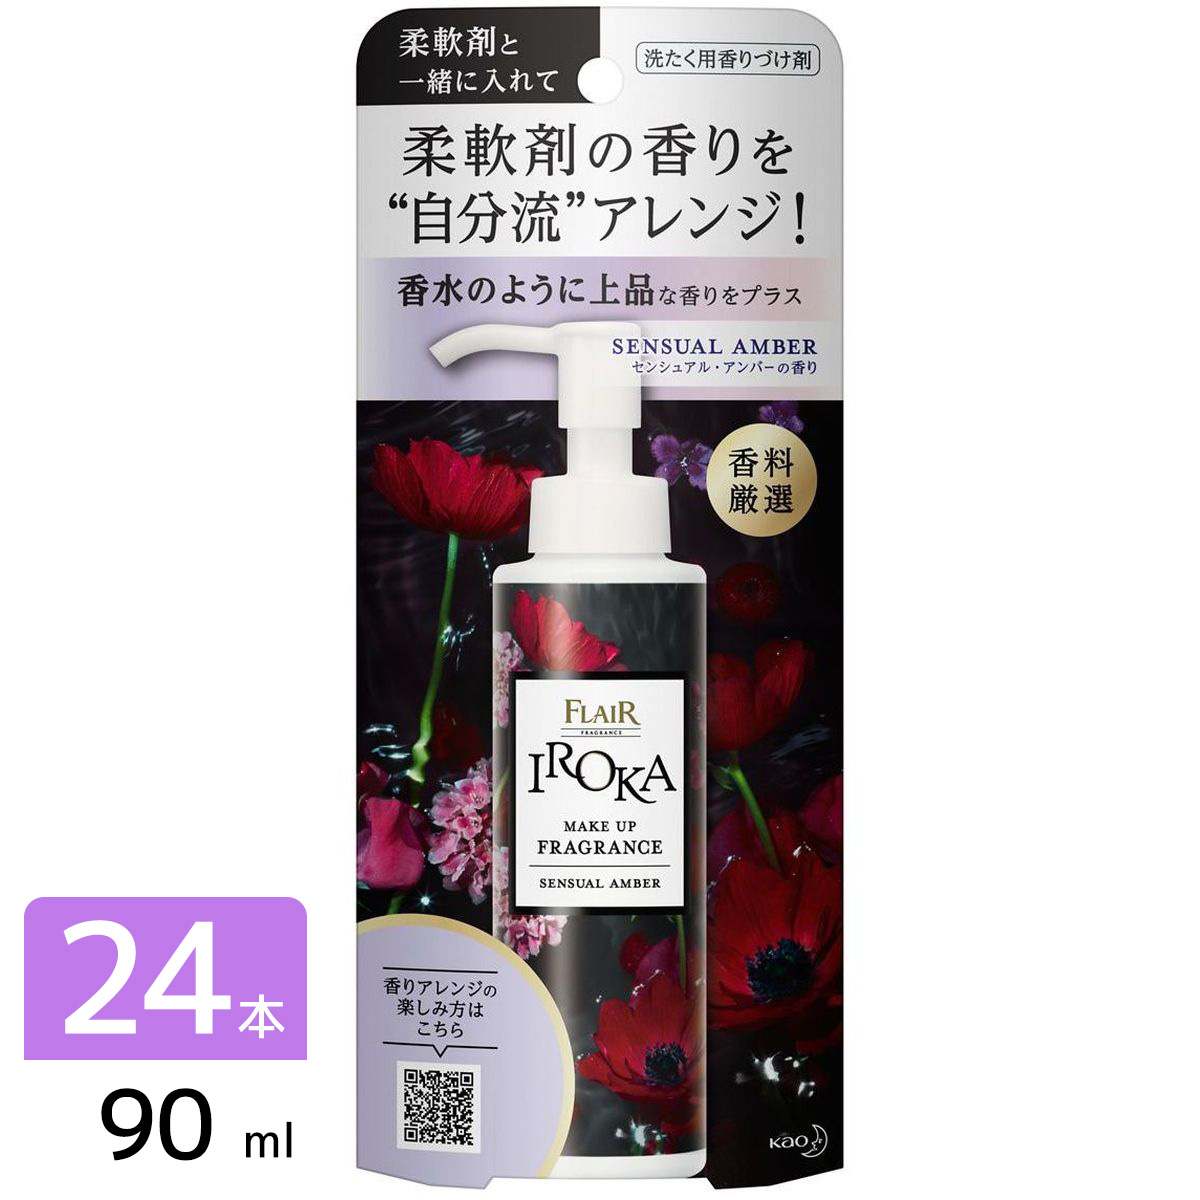 IROKA メイクアップフレグランス 洗たく用香りづけ剤 センシュアルアンバー 本体 90ml×24本